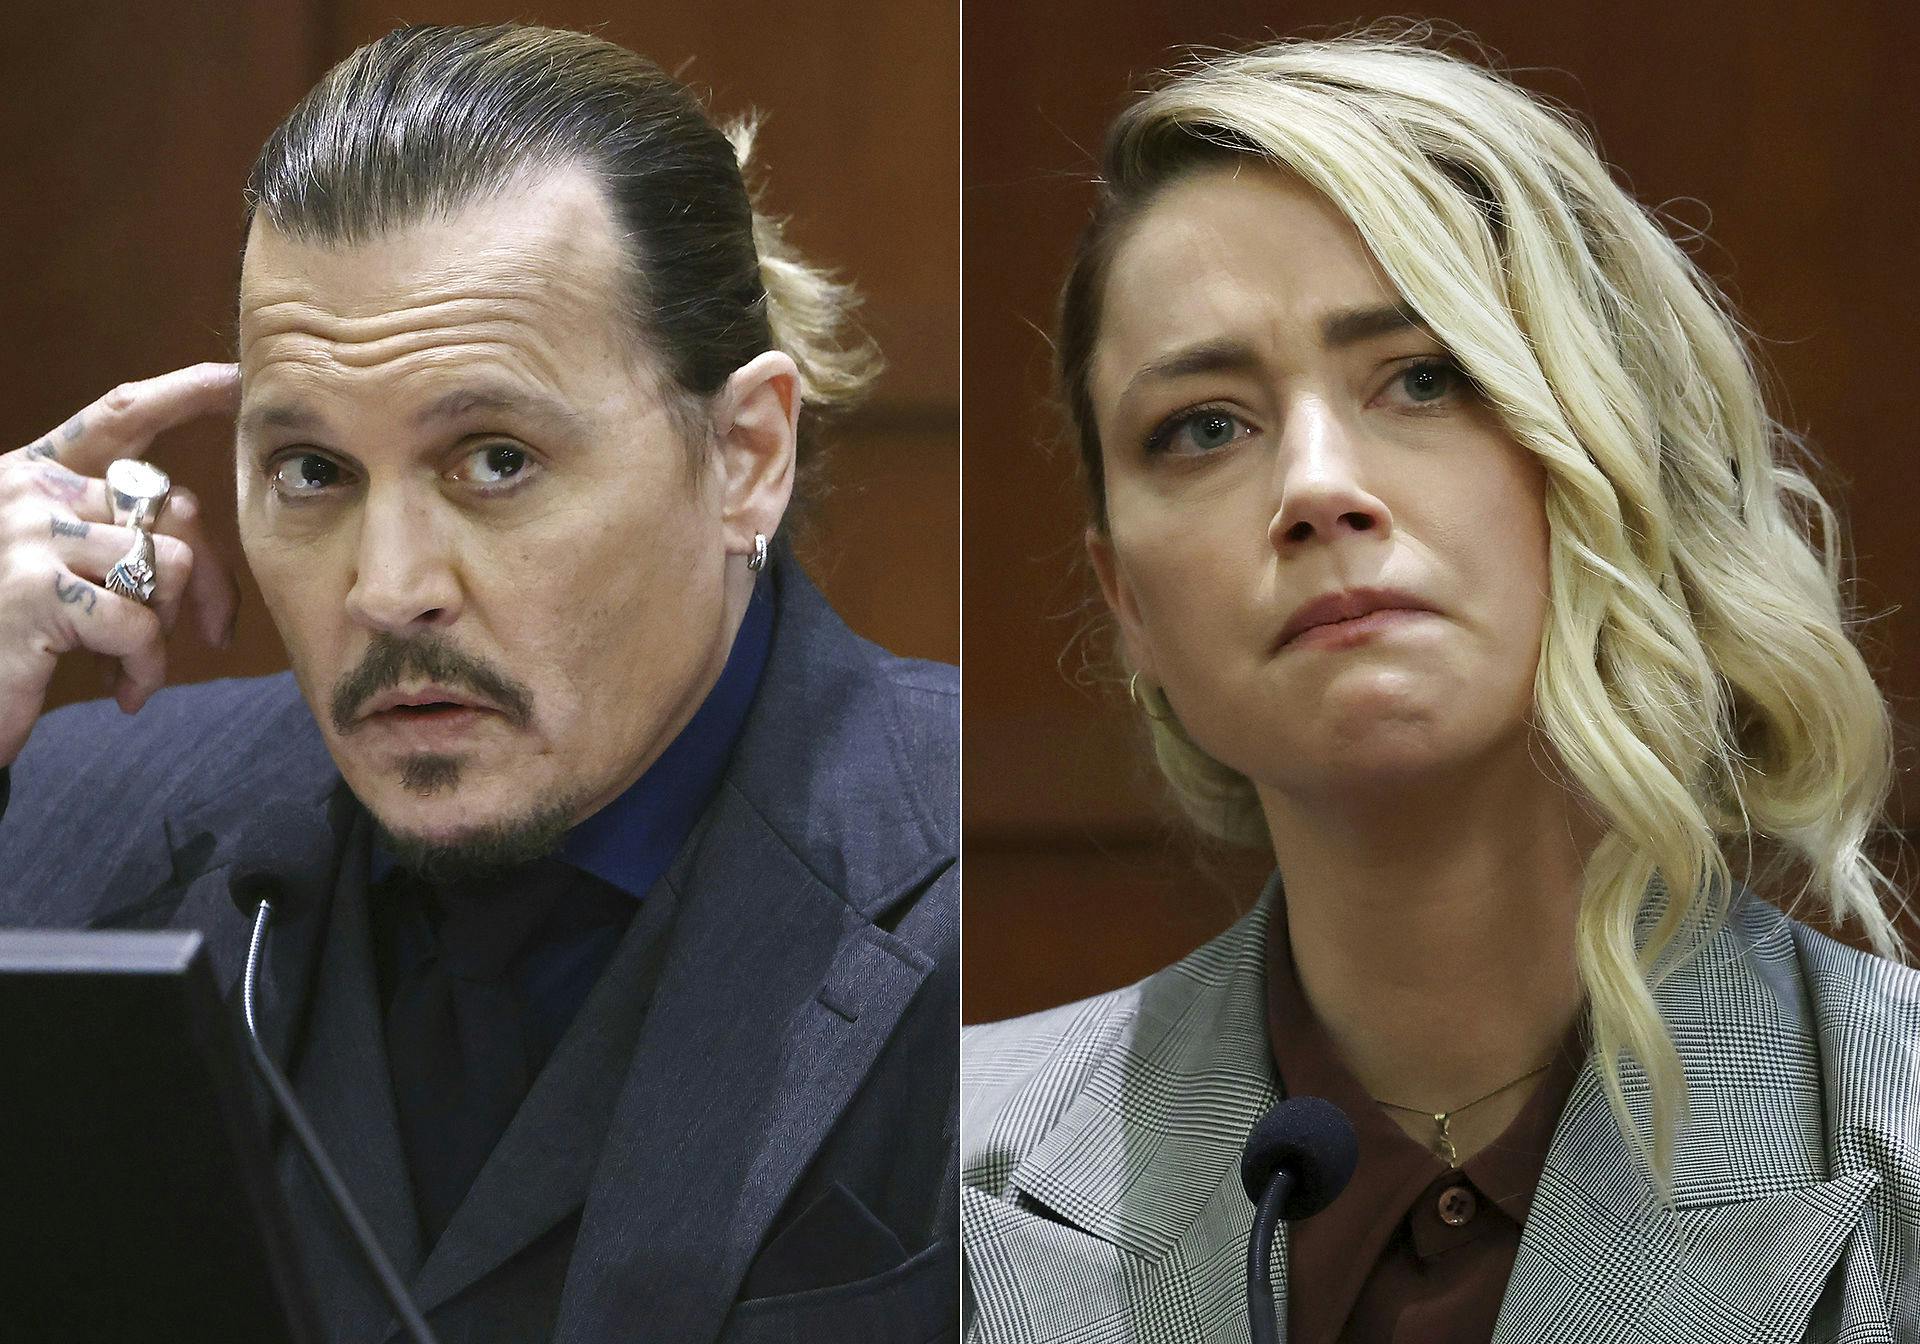 Det vilde retsdrama mellem Johnny Depp og Amber Heard udspillede sig tidligere i år. Nu er den første film om sagen på vej.